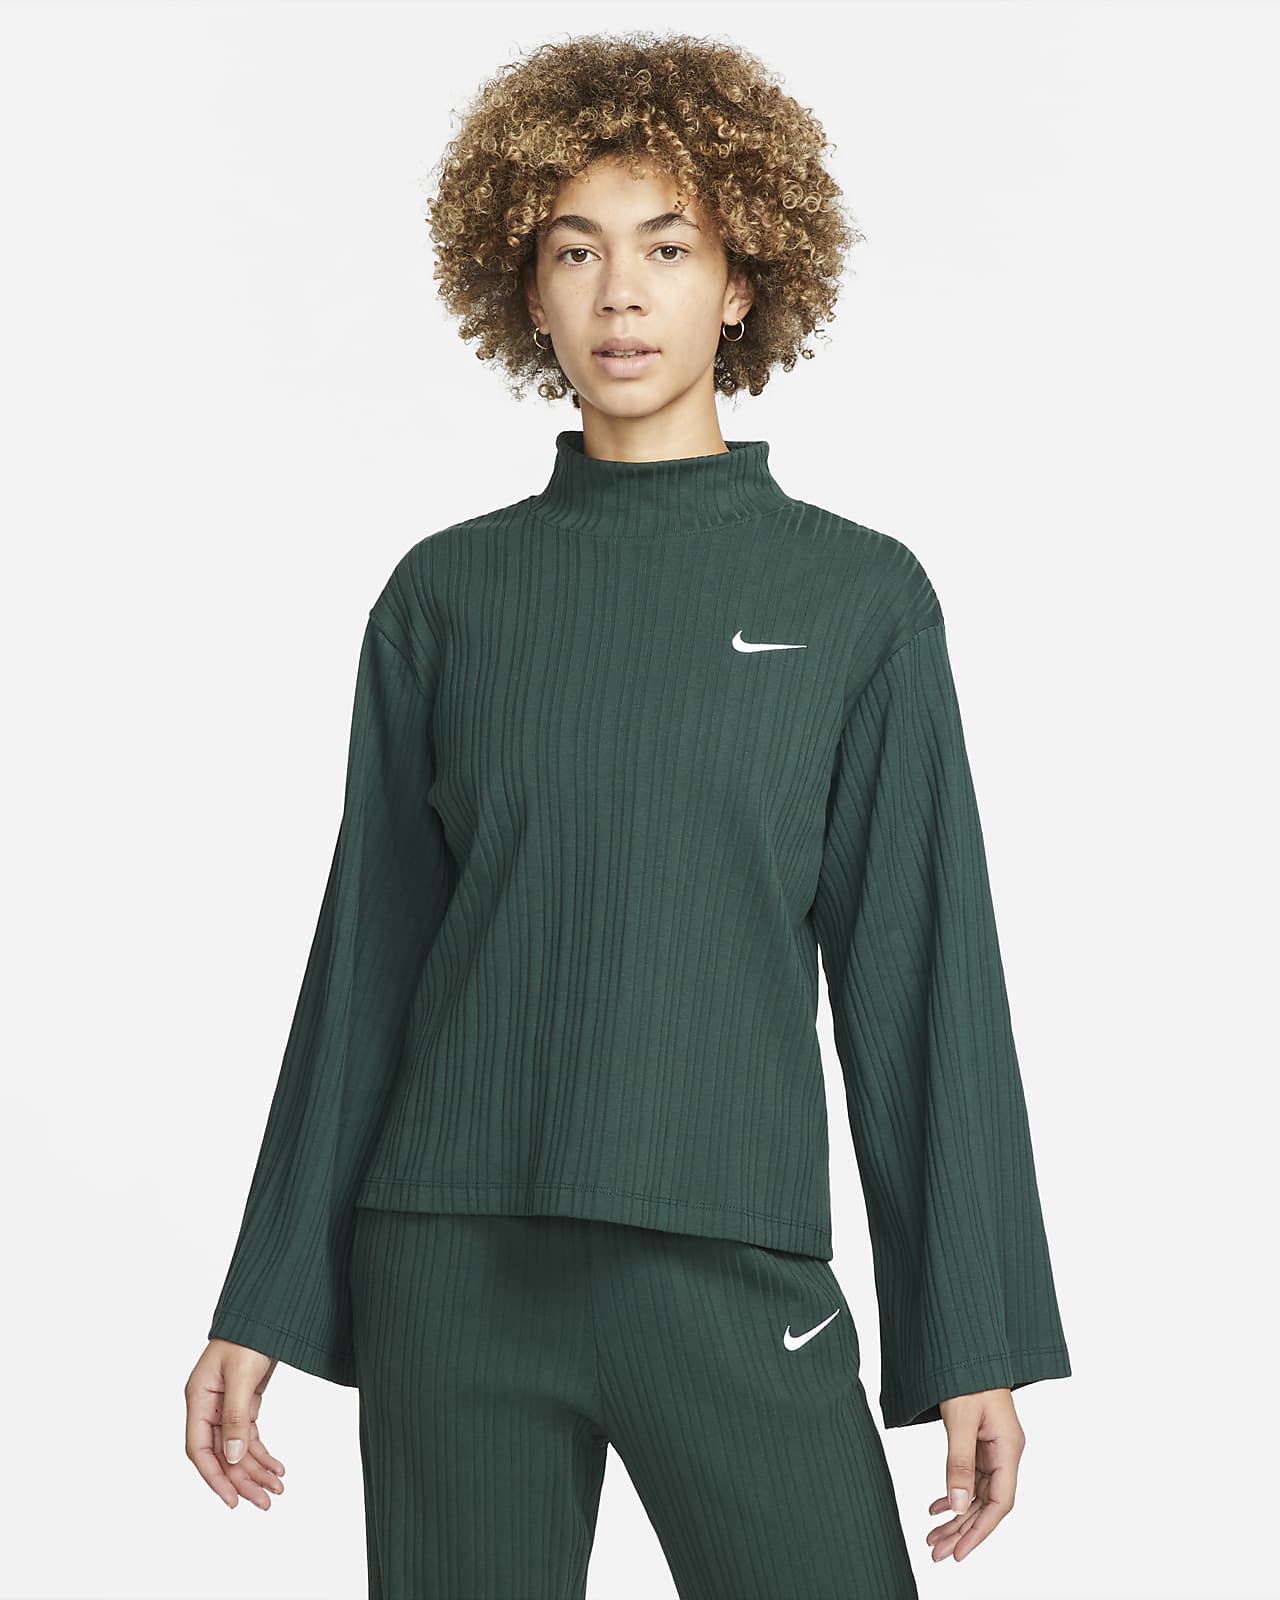 Nike Sportswear Women's Ribbed Jersey Long-Sleeve Top. Nike NZ